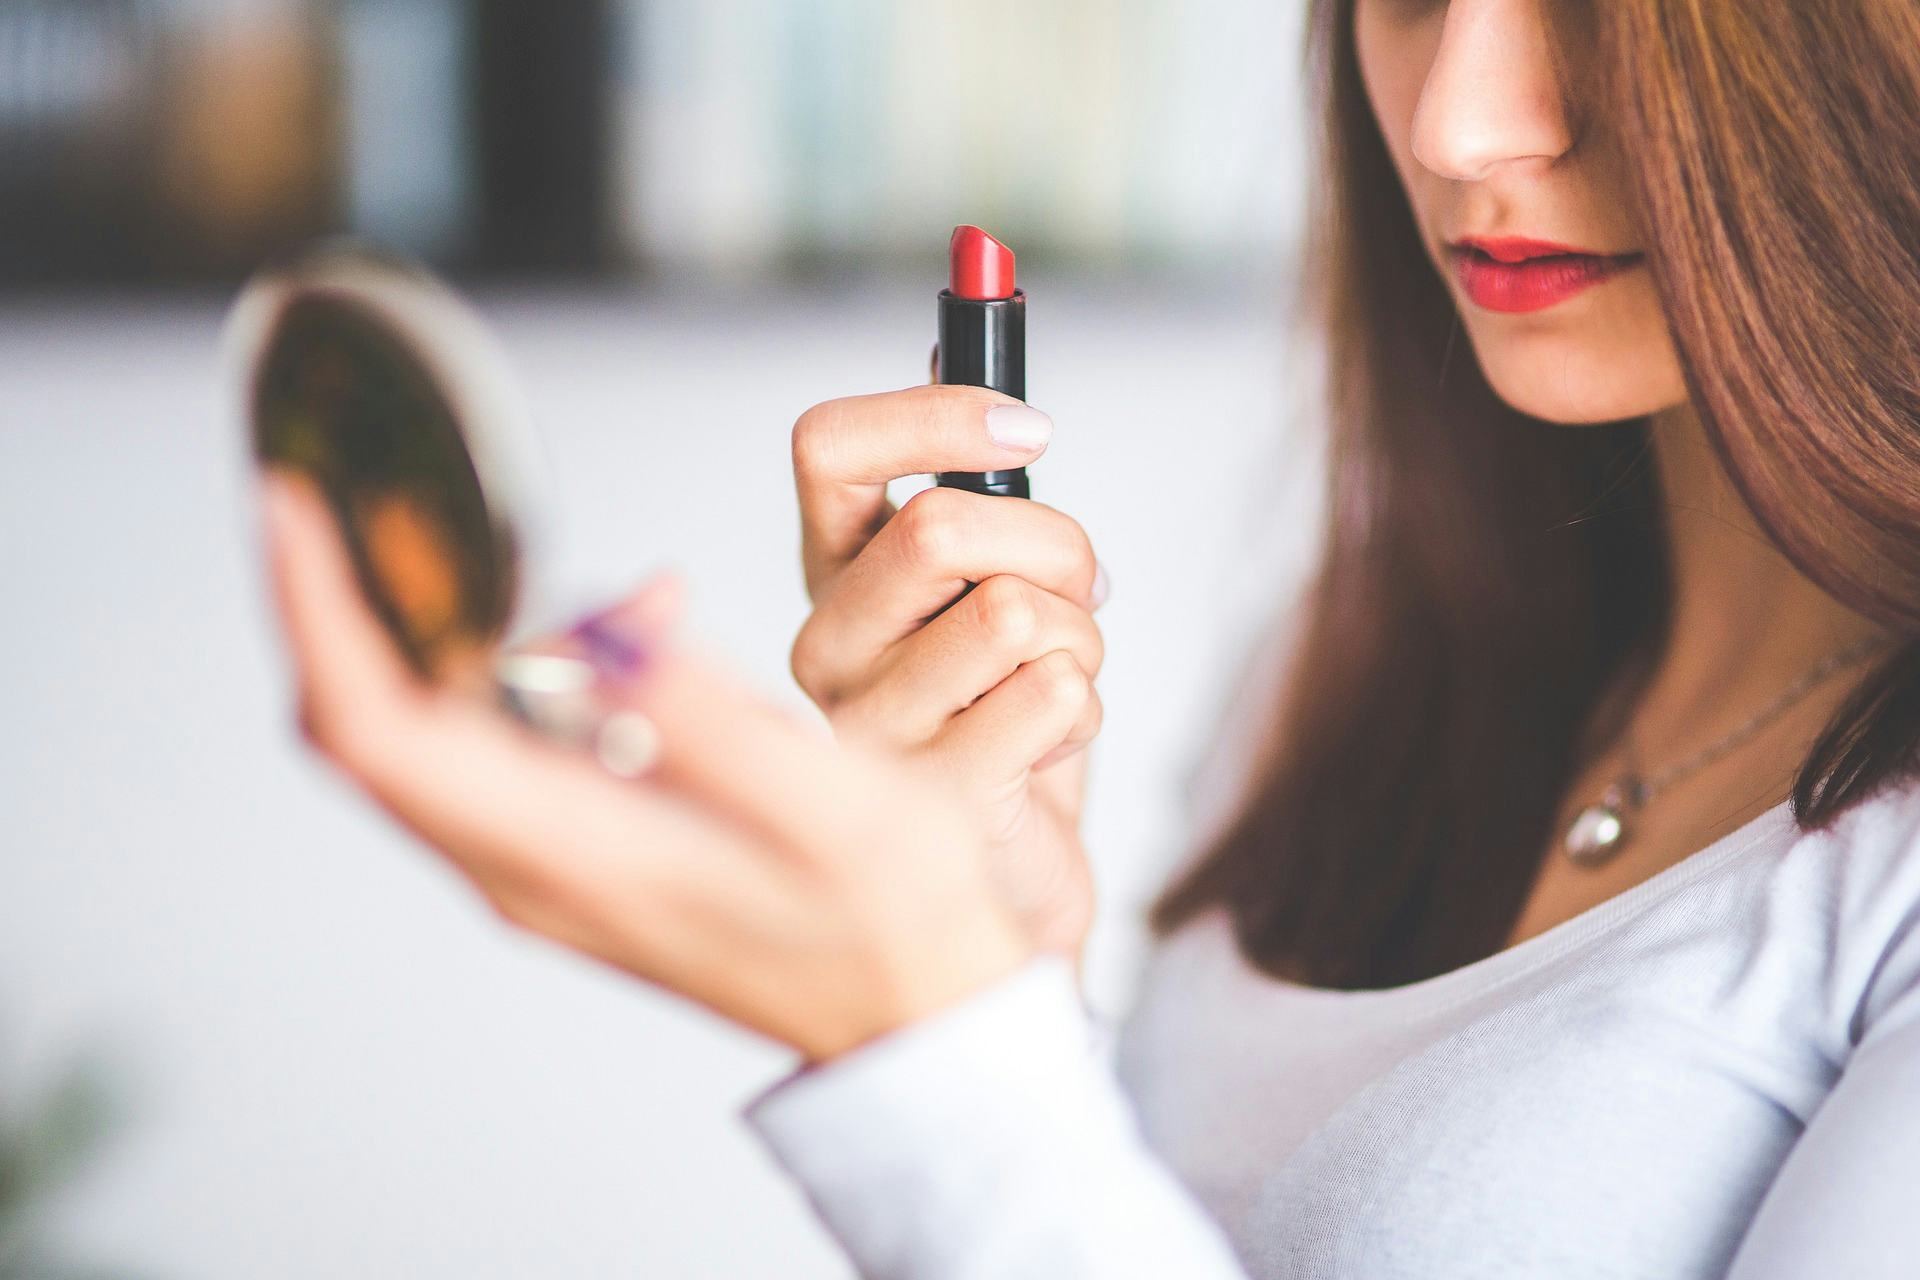 Winkelketen discrimineert vrouwelijke medewerkers met make-upvoorschriften